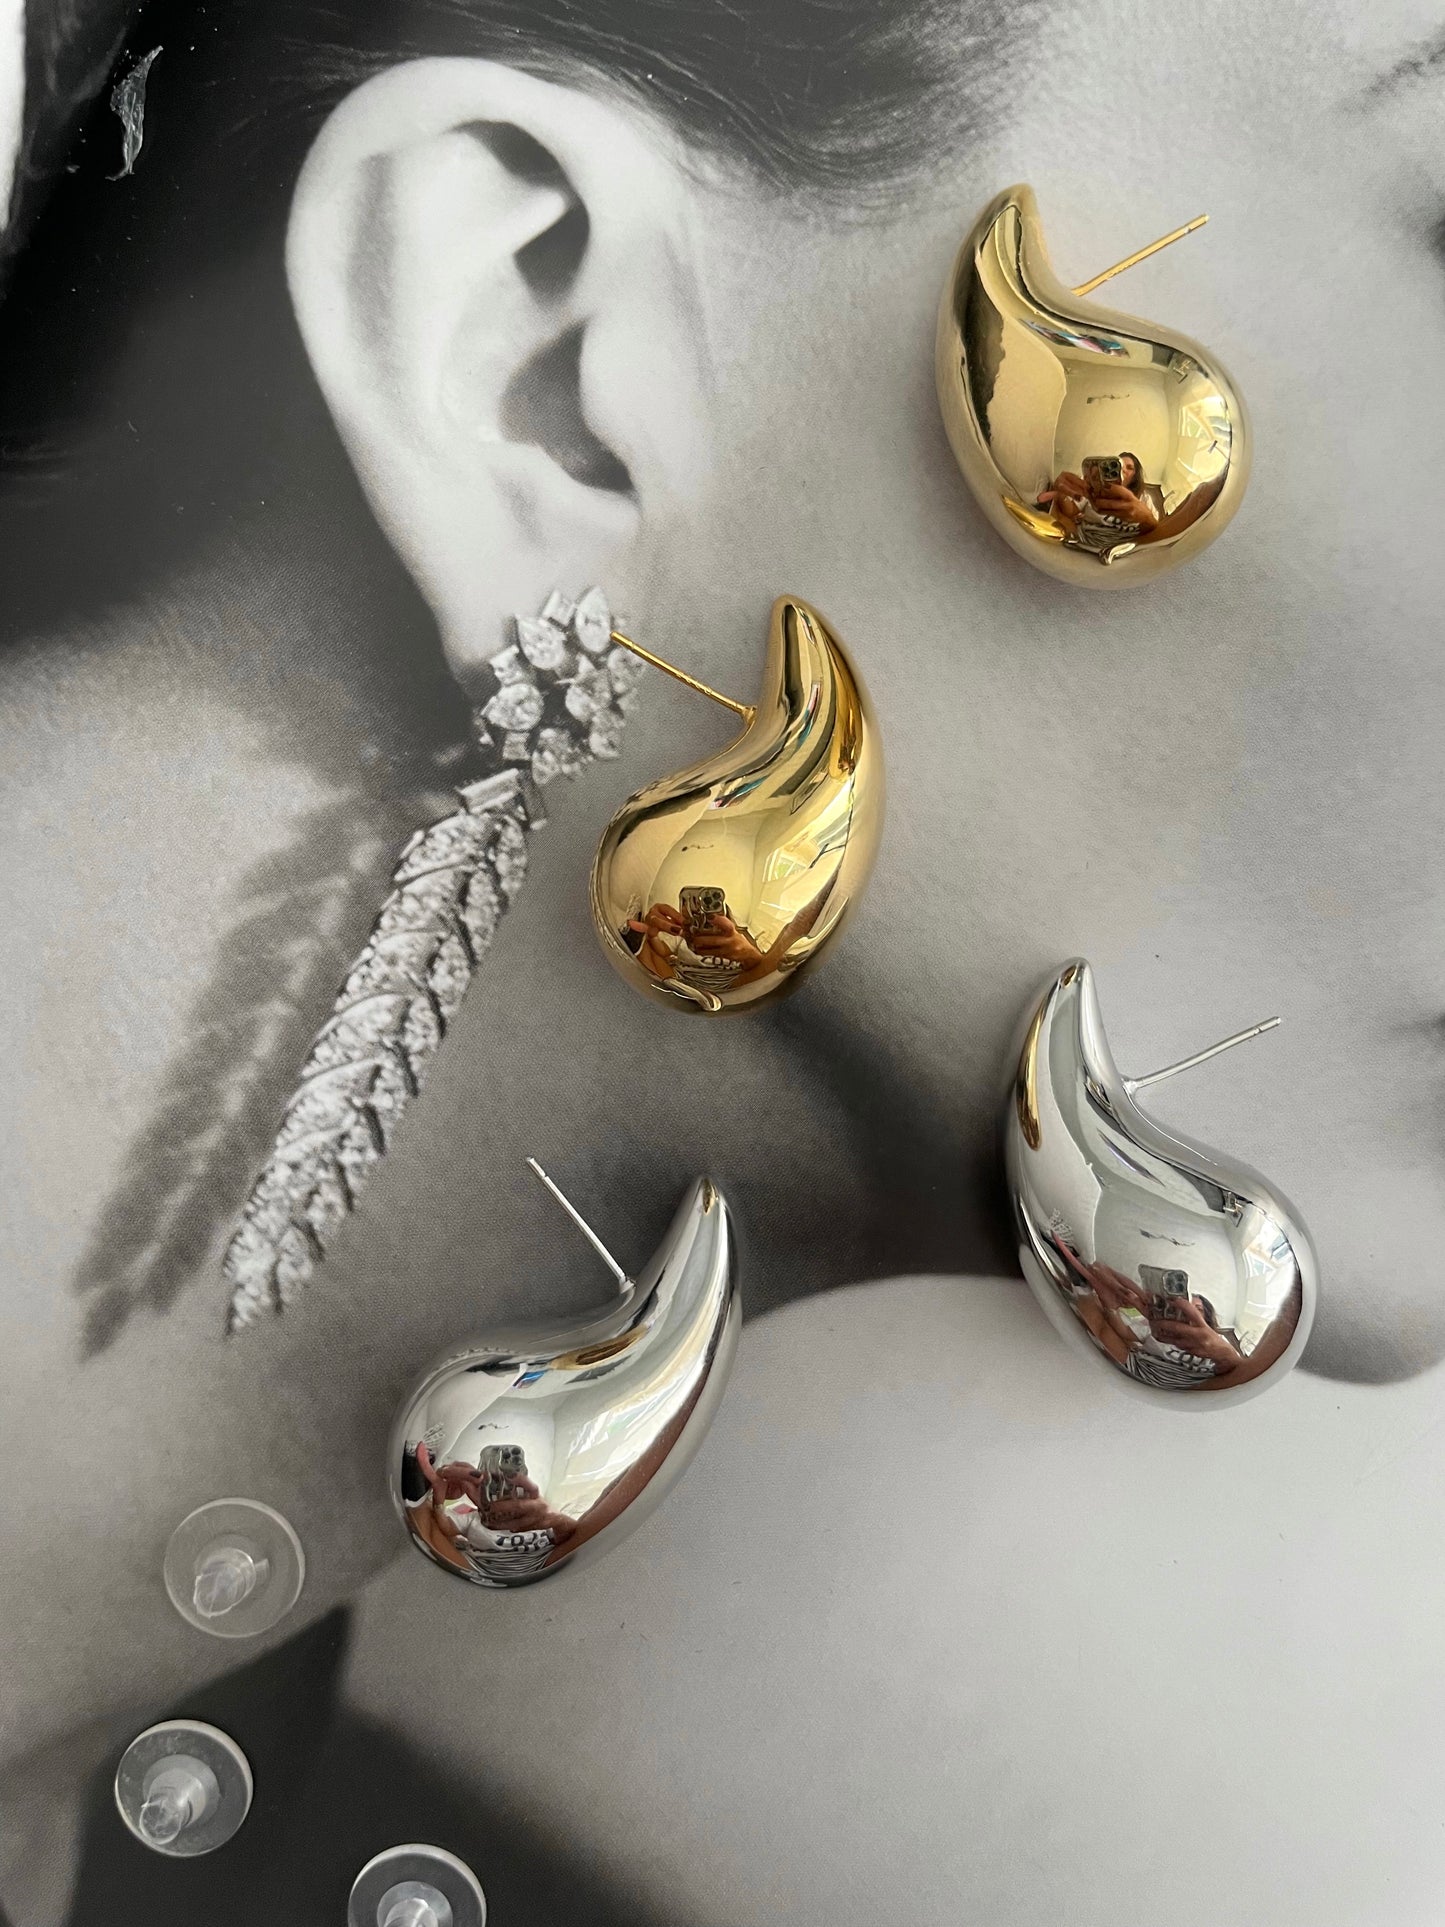 The “now” basics earrings